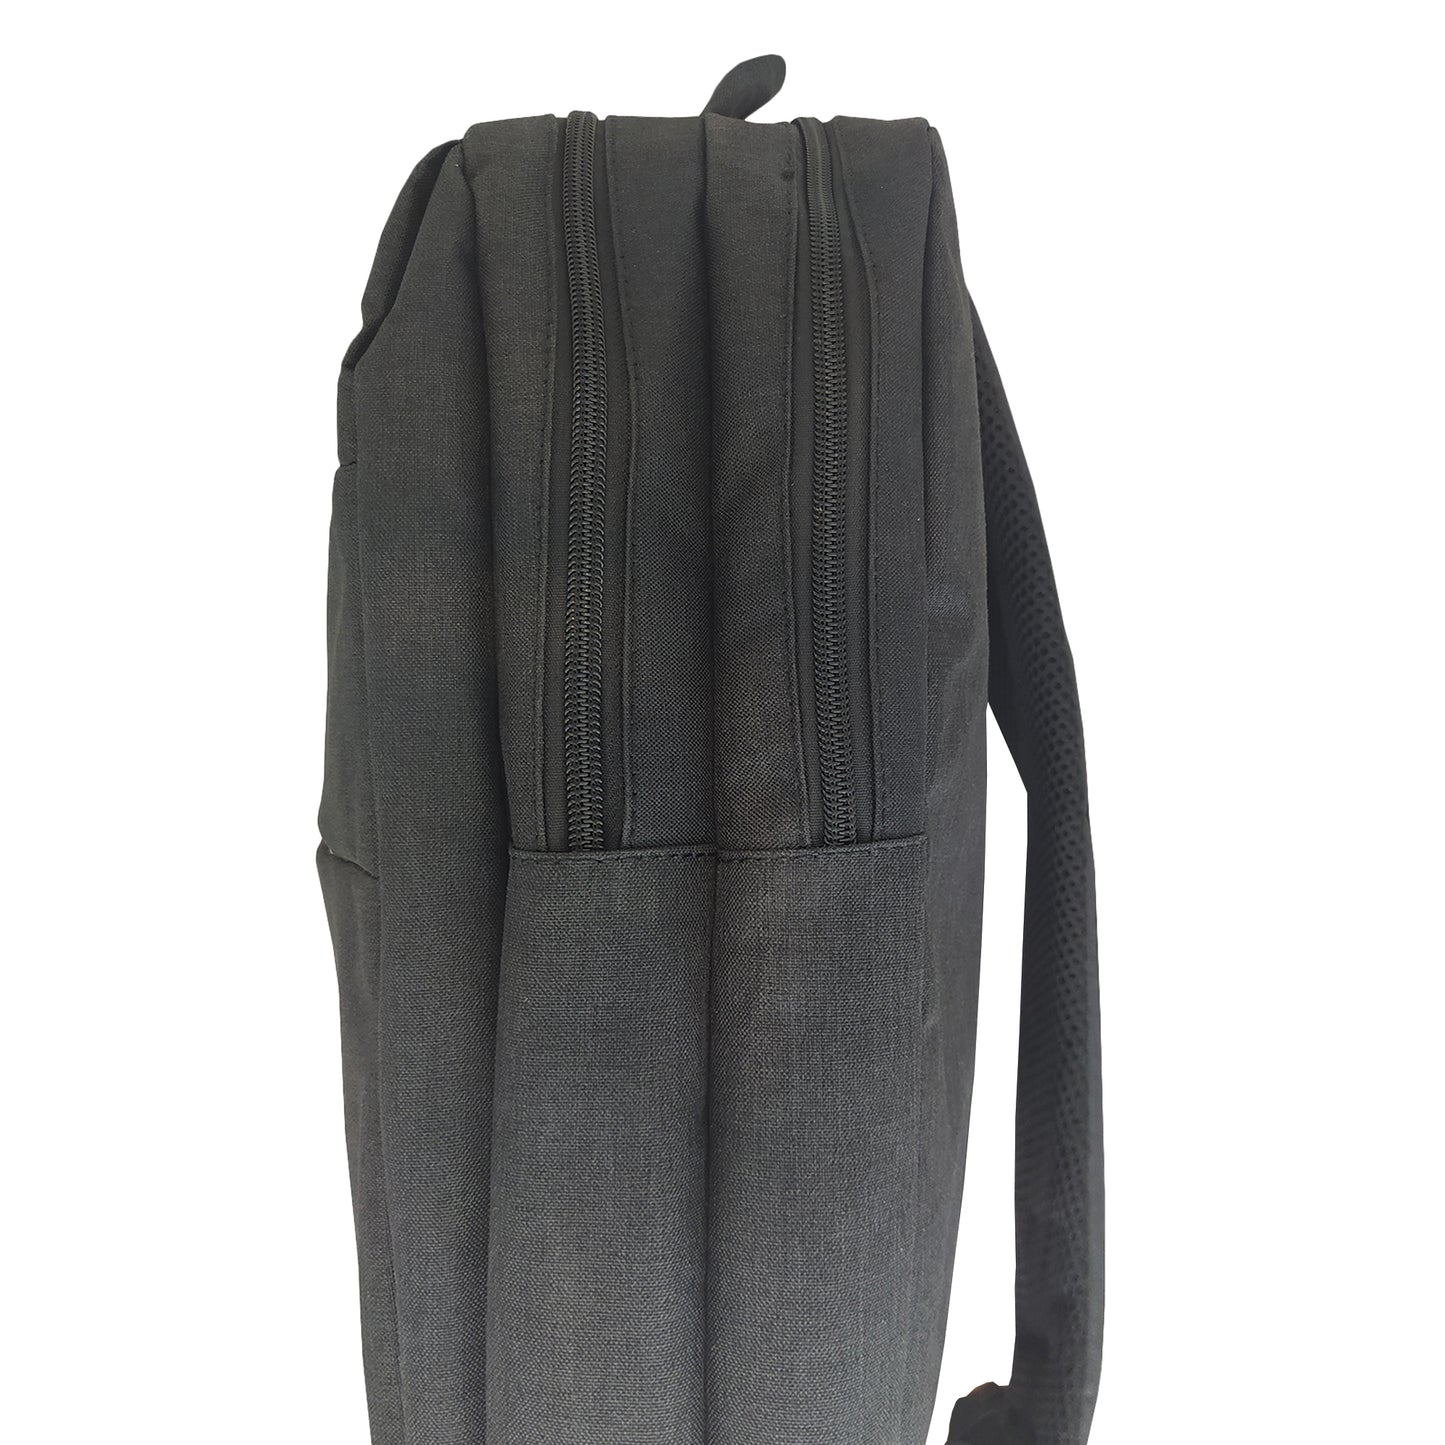 Υφασμάτινο Σακίδιο Πλάτης Ανθρακί Backpack 0501016